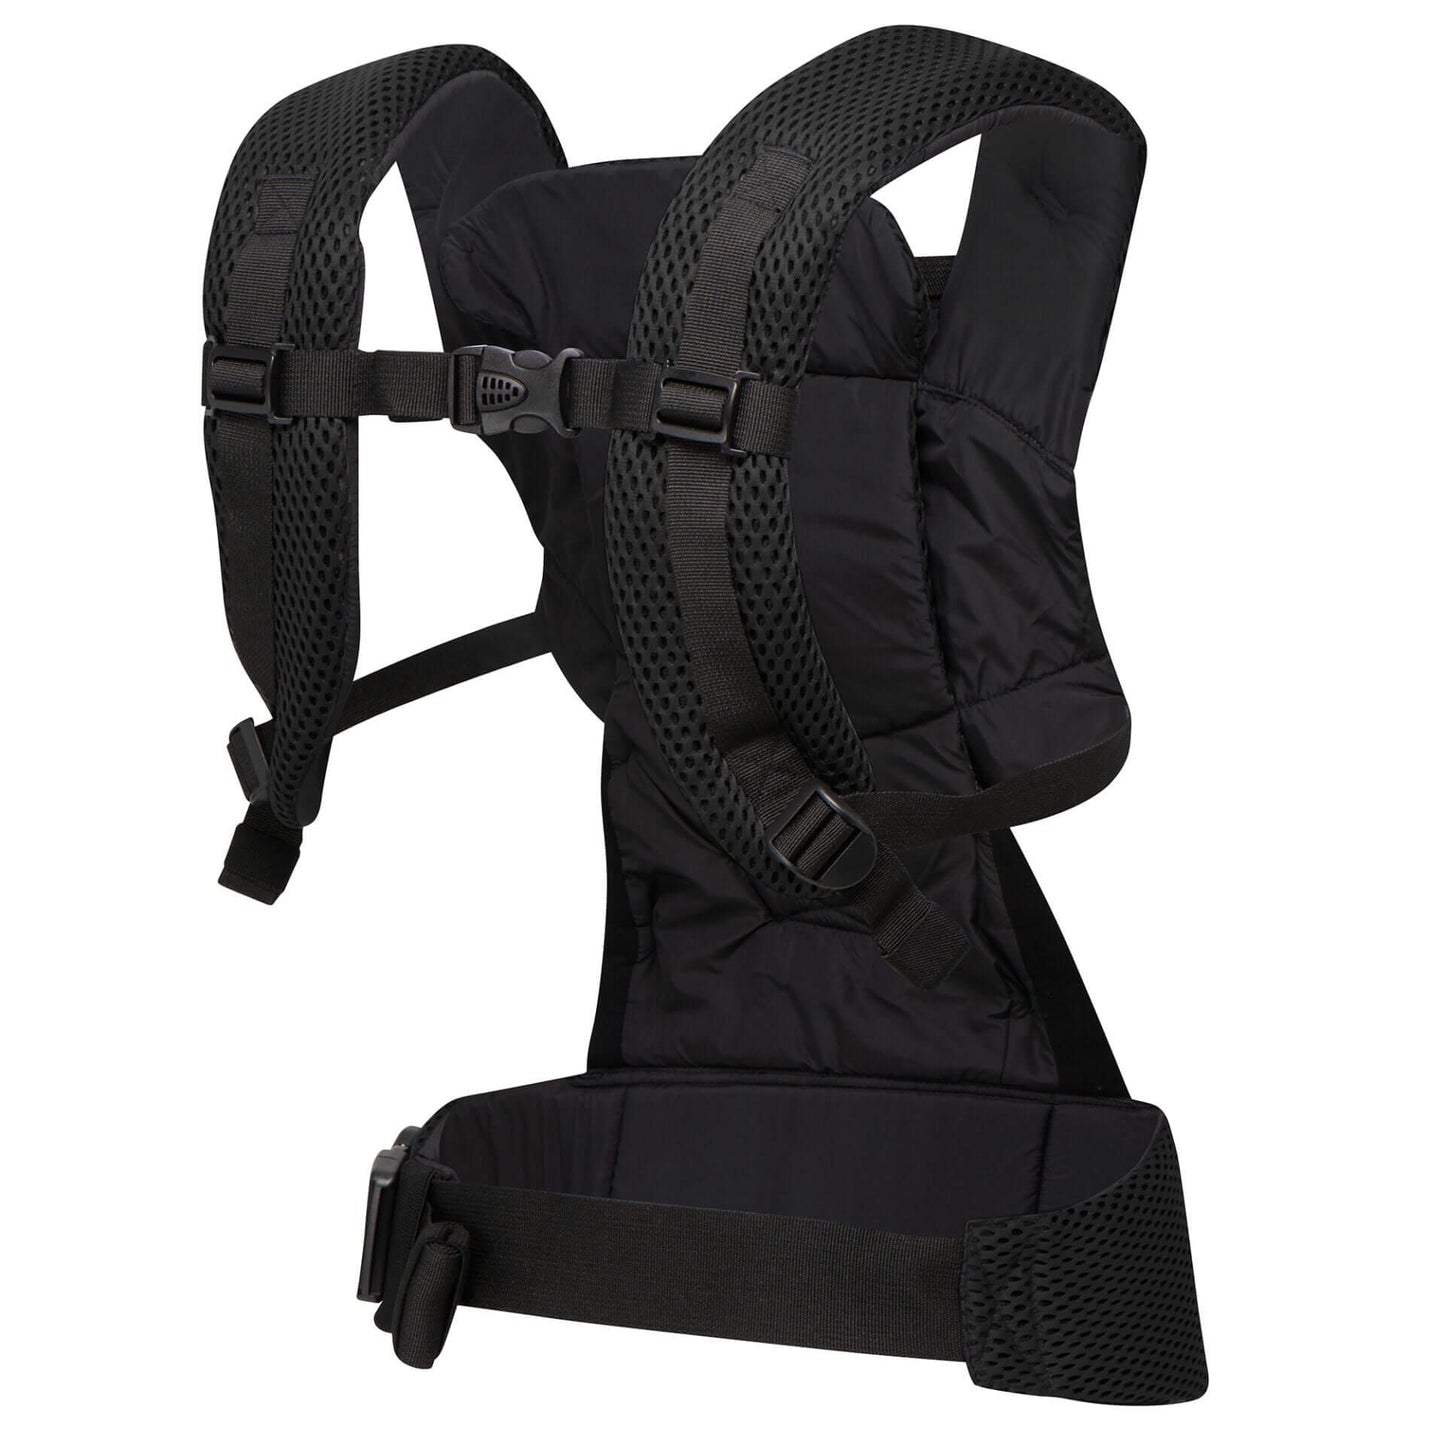 Dooky Urban Comfort Baby Carrier (Black)